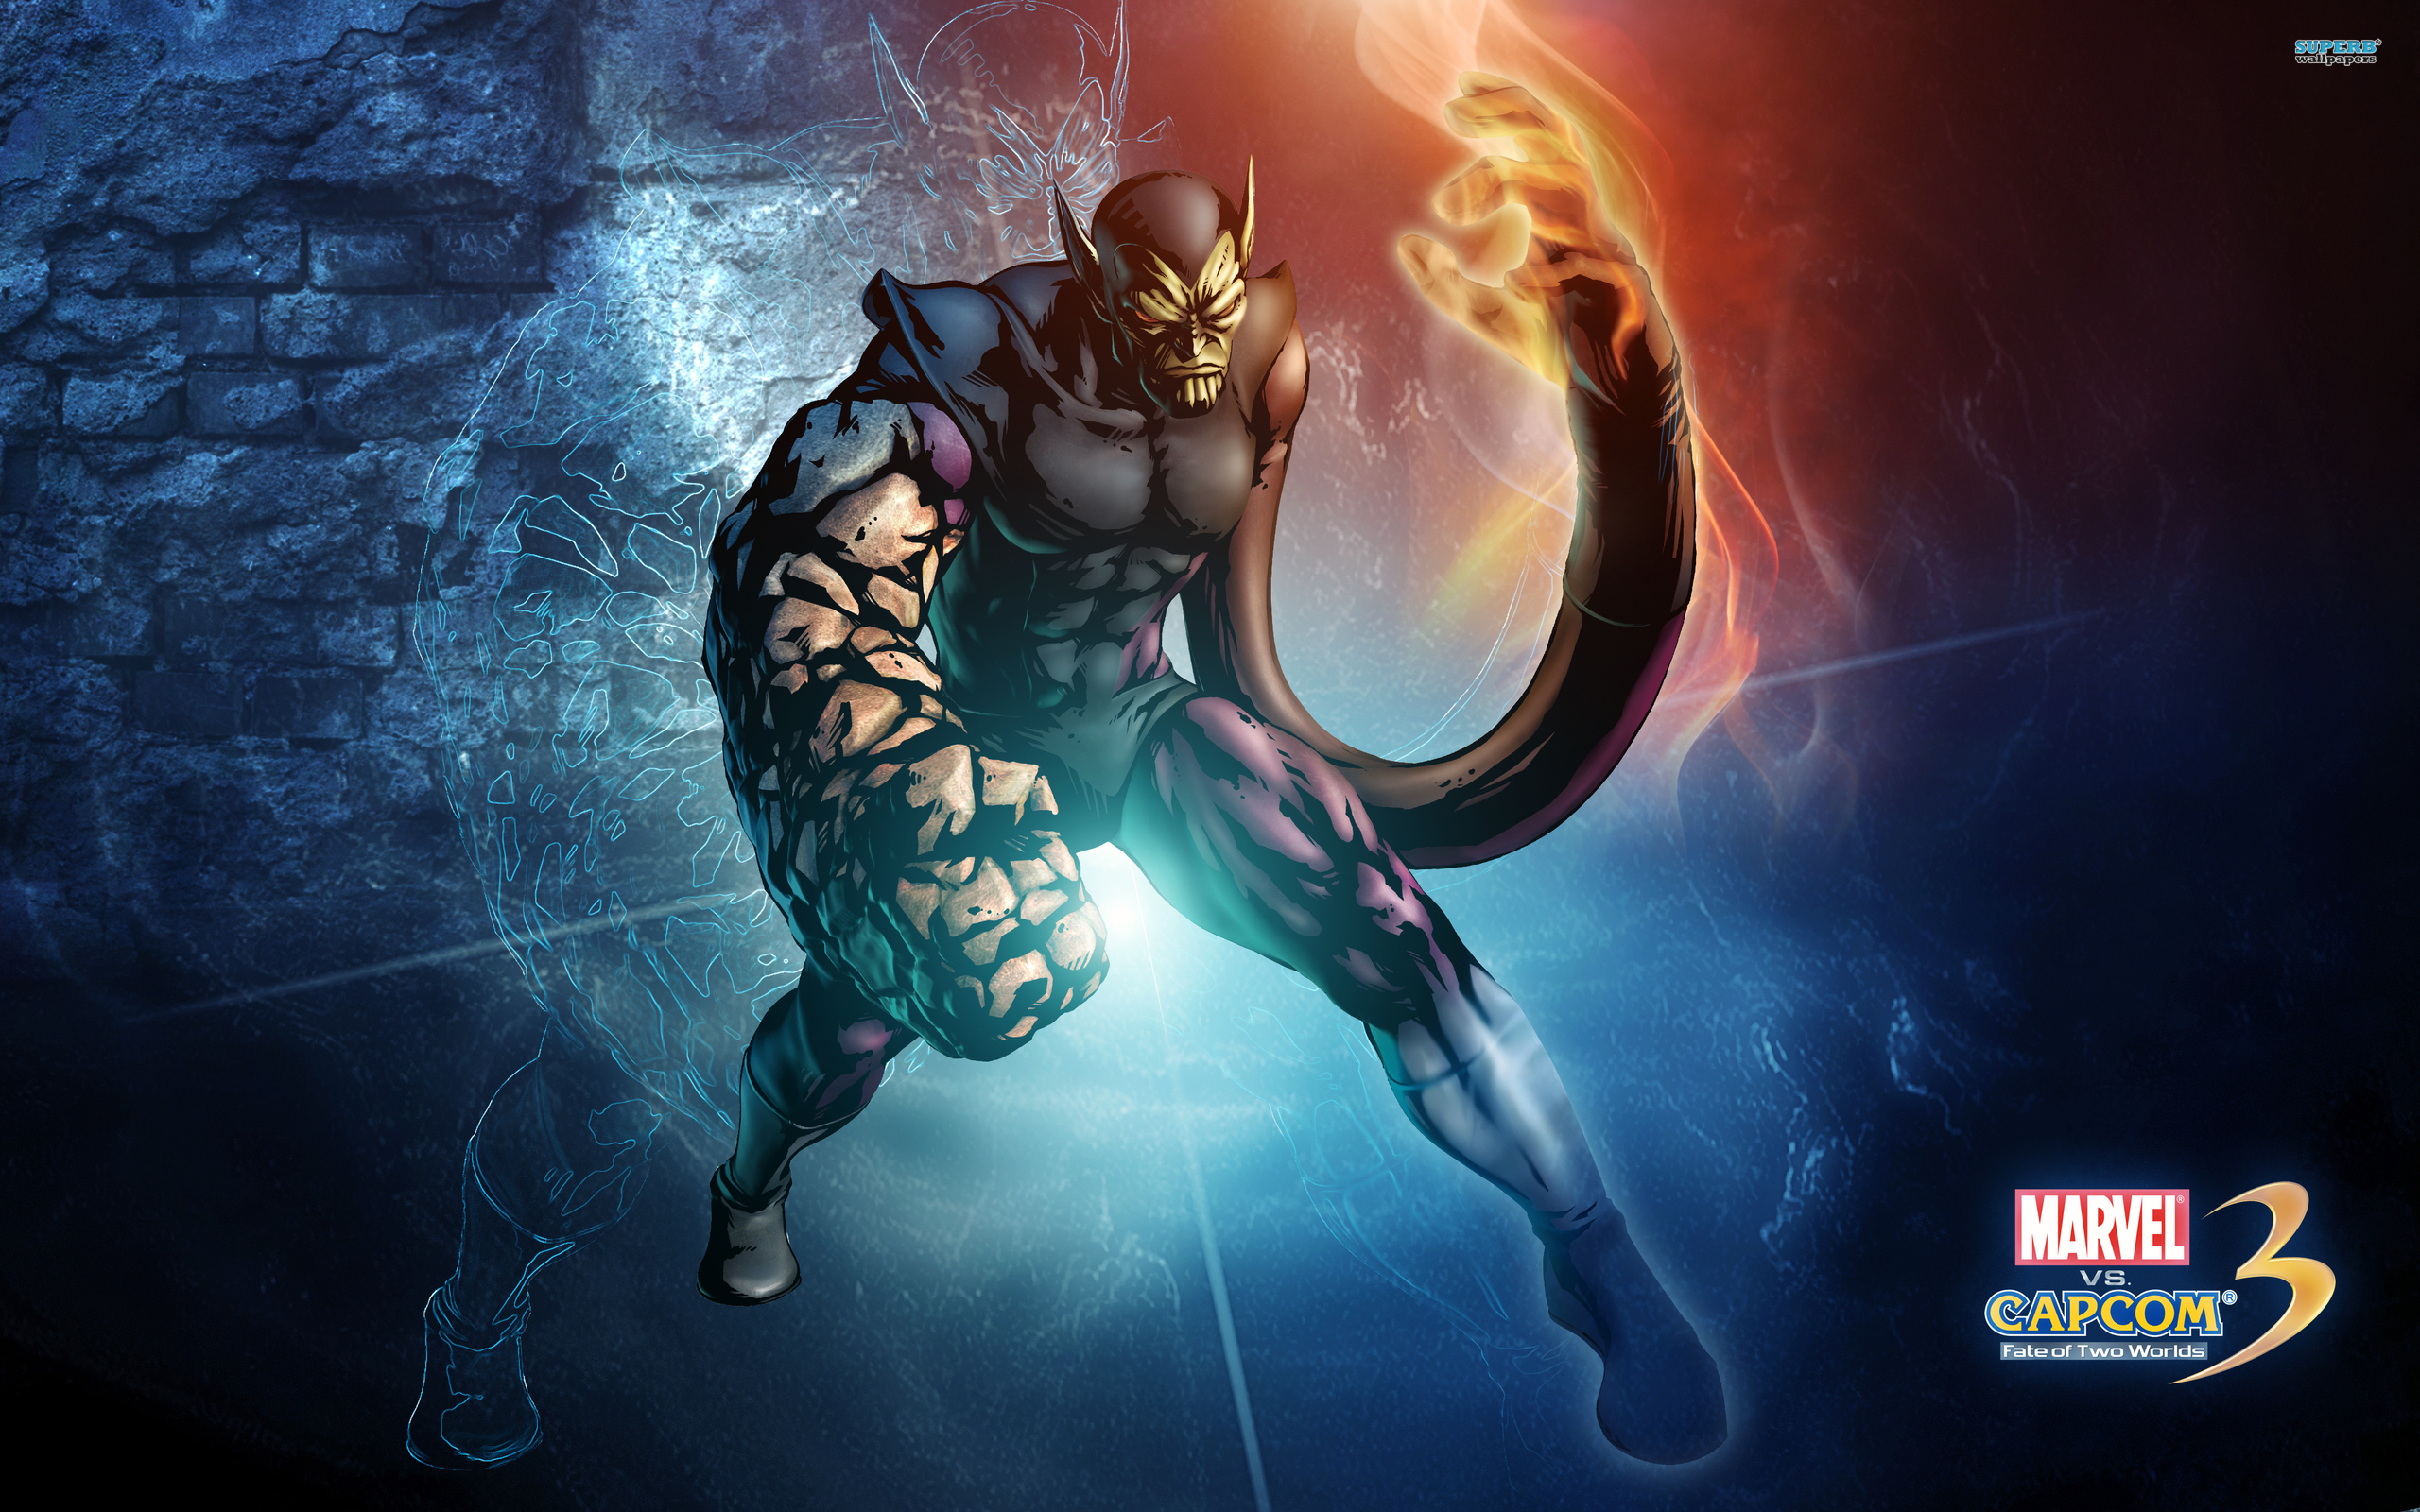 Foto Marvel vs Capcom Superhjältar Krigare Suoer Skrull Fantasy spel Övernaturliga varelser 2560x1600 dataspel Datorspel